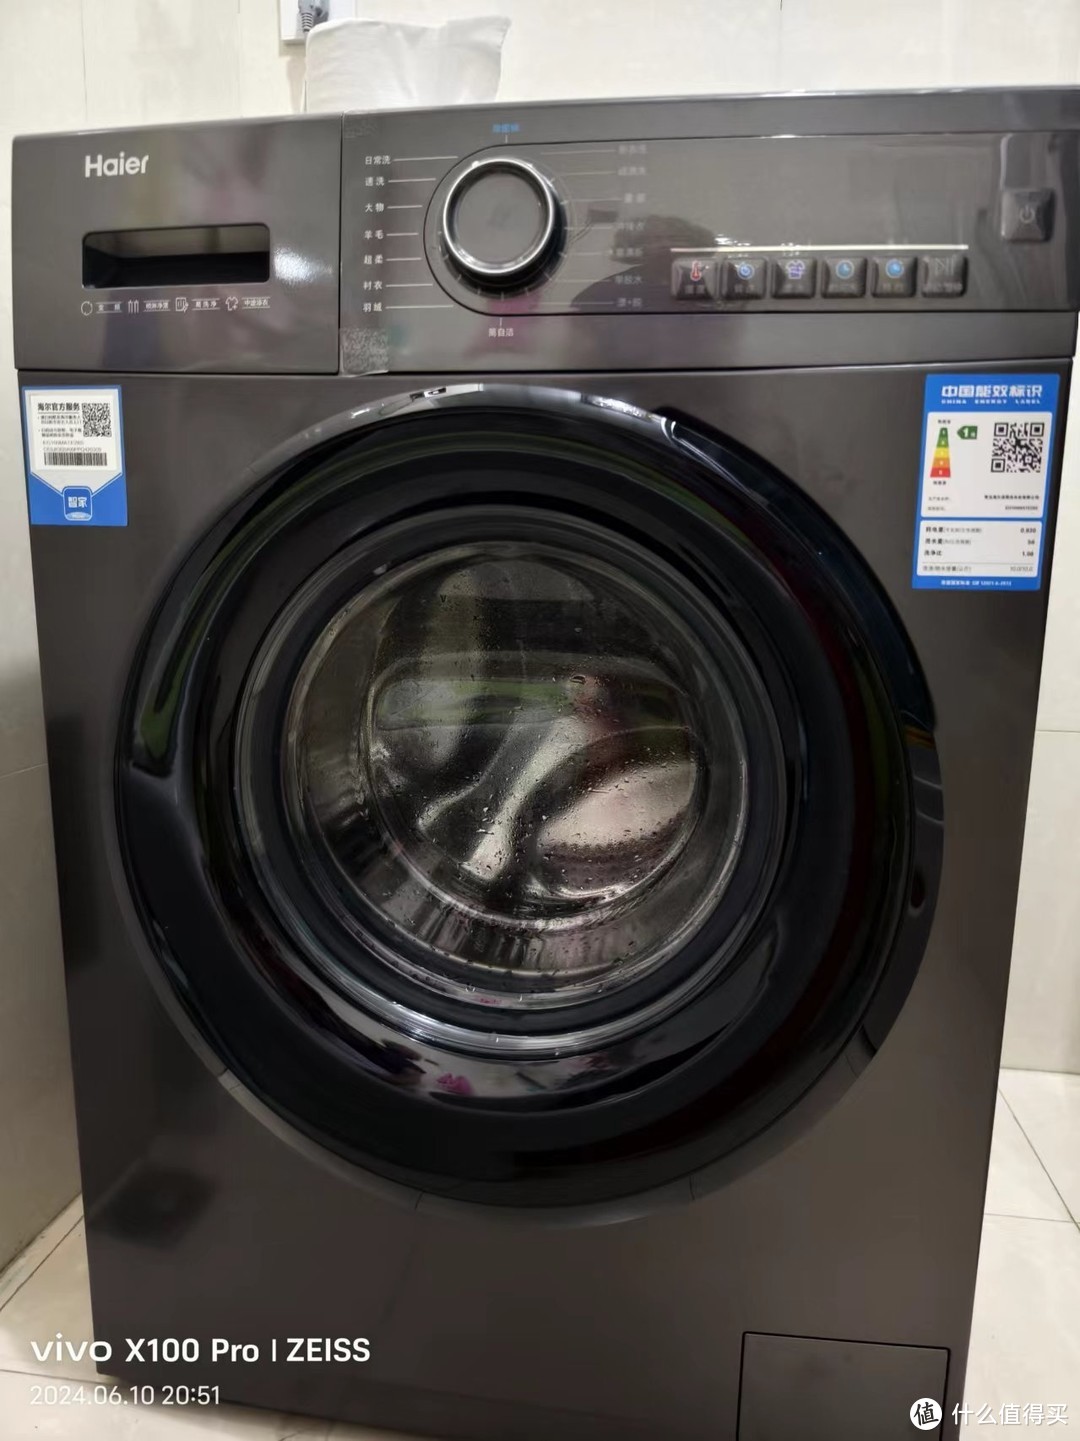 海尔滚筒洗衣机eg100mate28s:智能洗护,品质生活之选